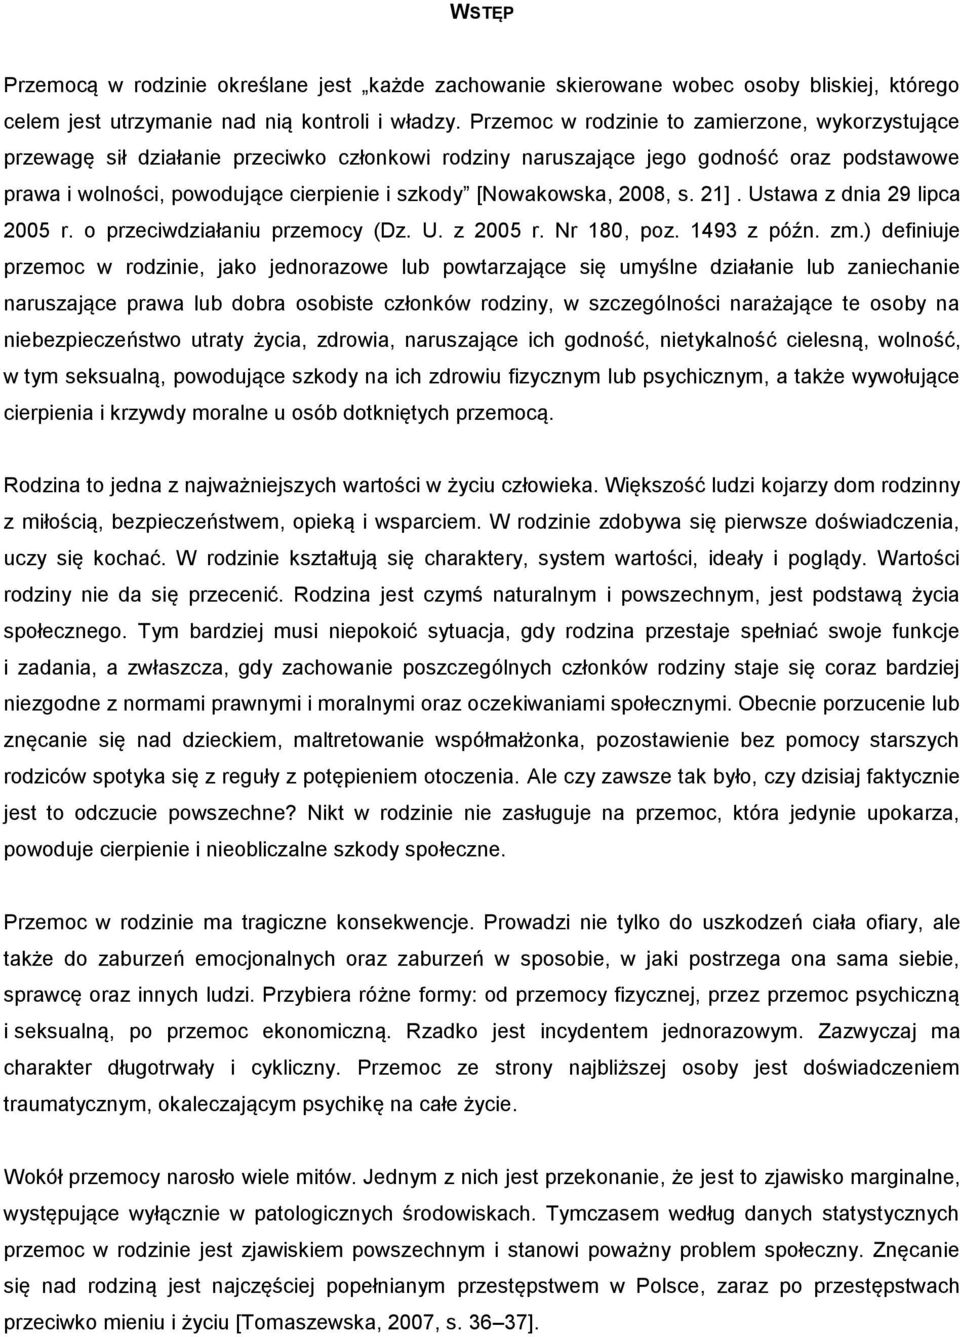 [Nowakowska, 2008, s. 21]. Ustawa z dnia 29 lipca 2005 r. o przeciwdziałaniu przemocy (Dz. U. z 2005 r. Nr 180, poz. 1493 z późn. zm.